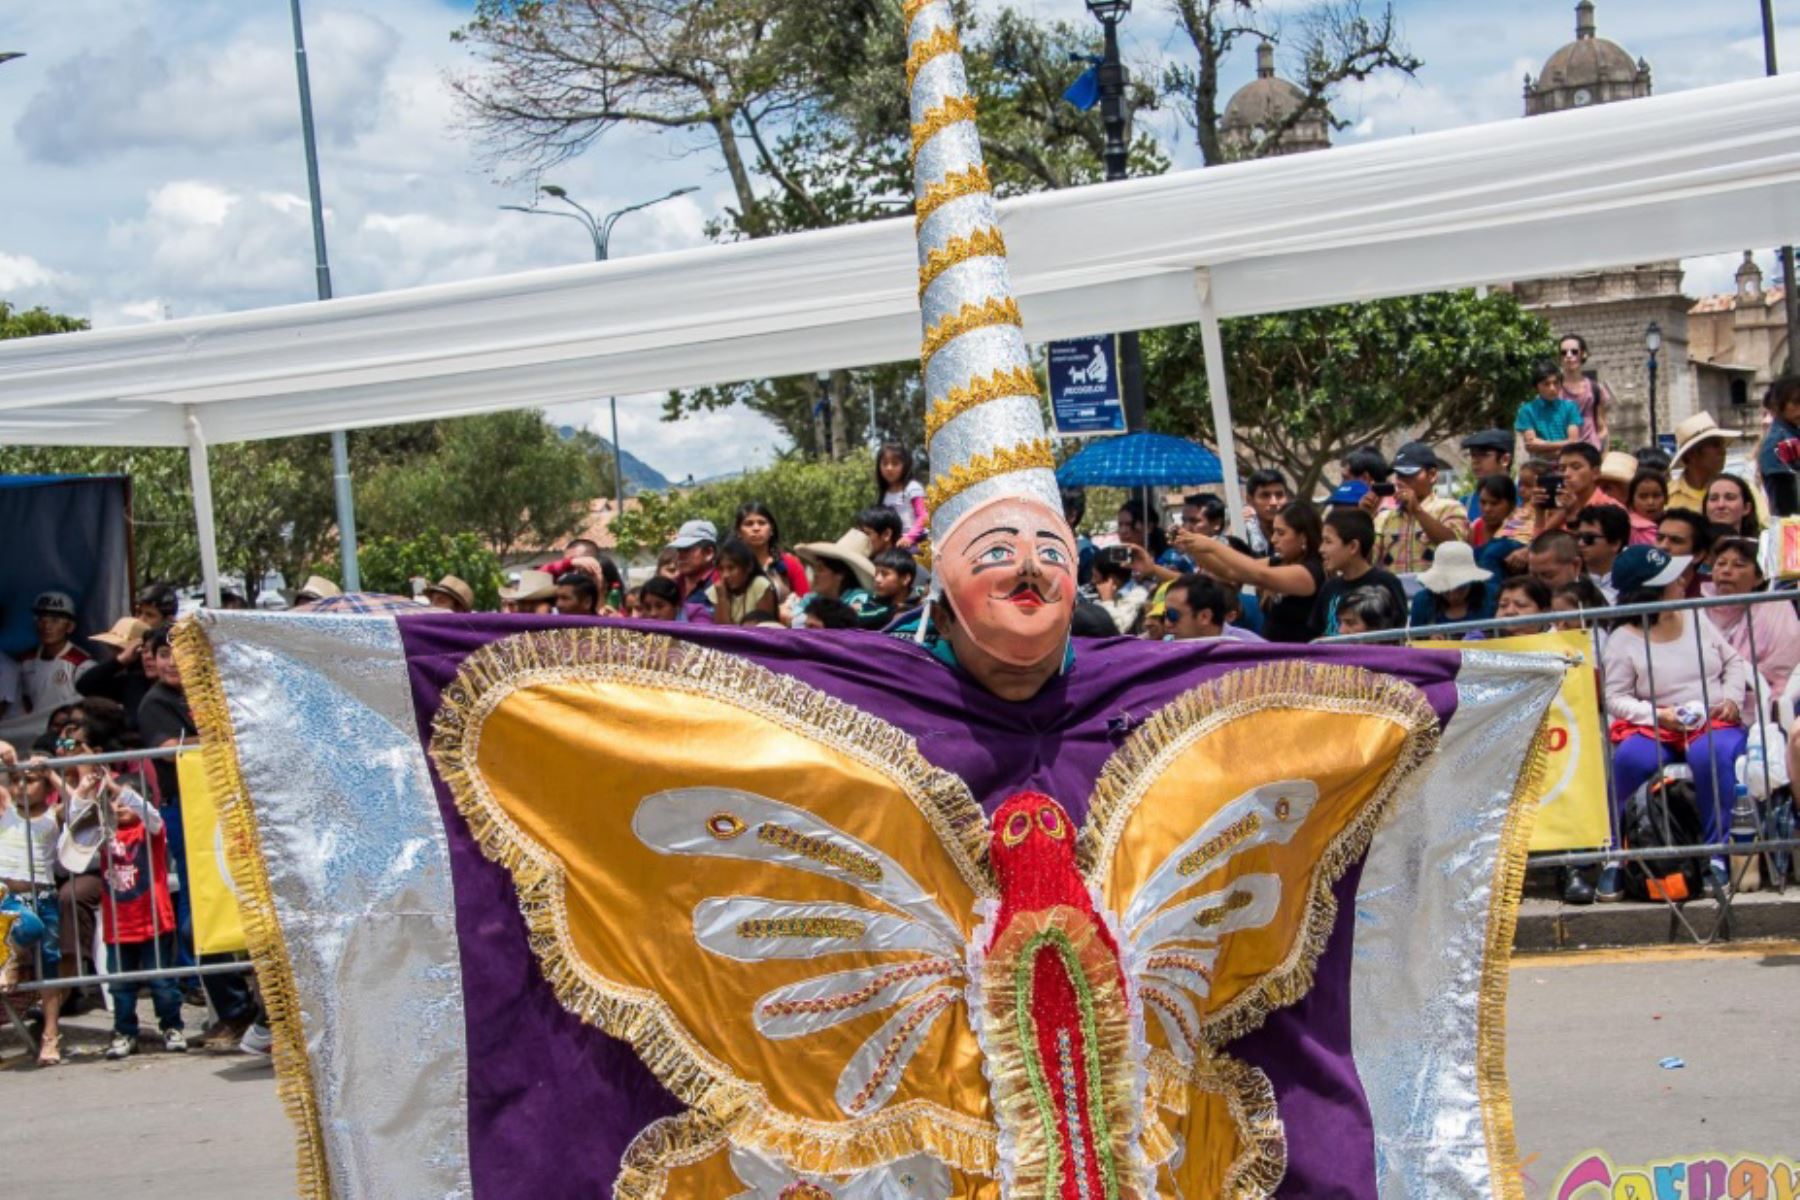 De todos los carnavales que se festejan en nuestro país, el de Cajamarca ha cobrado tal fama por su alborozada y organizada celebración, que le ha valido a esta histórica ciudad el título de Capital del Carnaval Peruano.